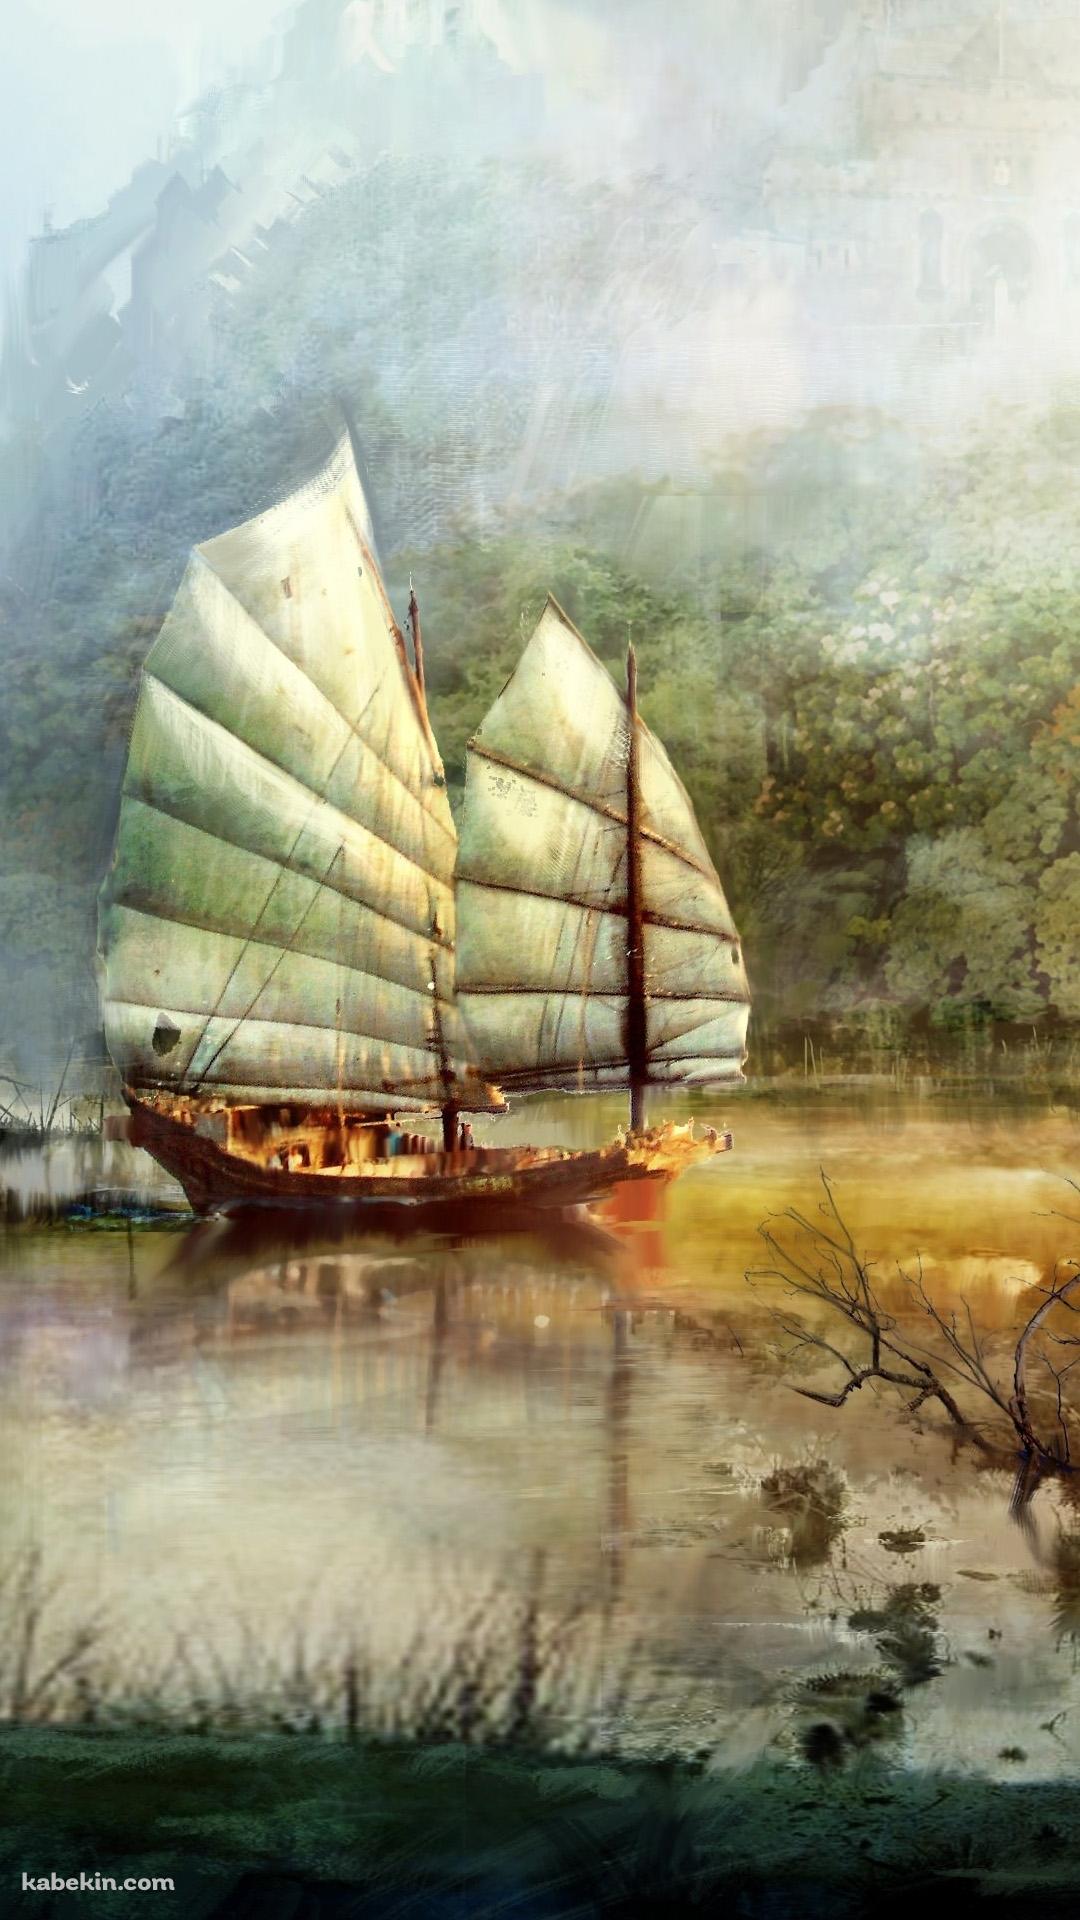 大型帆船のAndroidの壁紙(1080px x 1920px) スマホ用